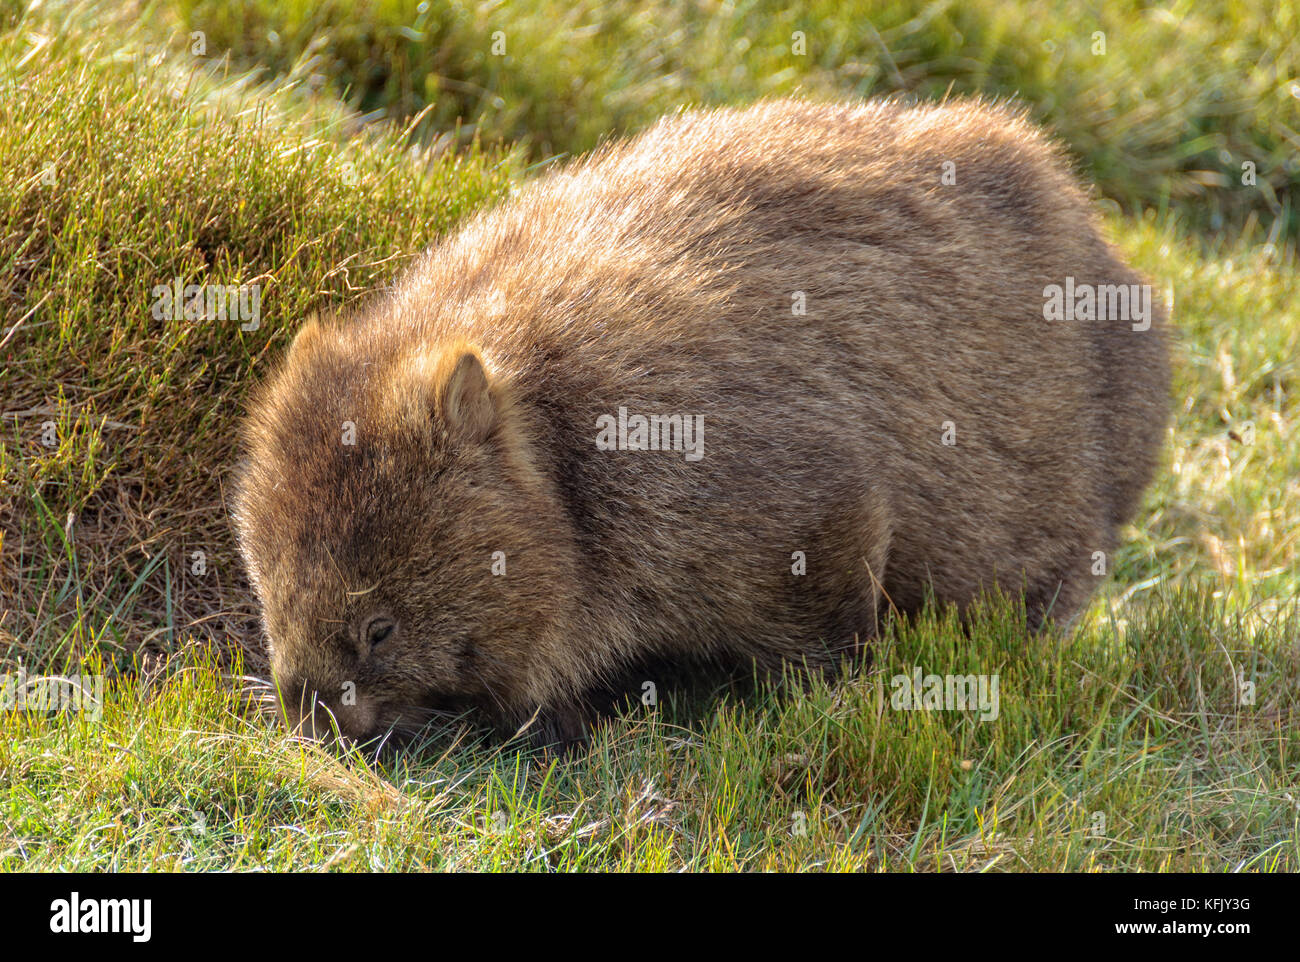 Le wombat est le plus grand mammifère fouisseur - Cradle Mountain, en Tasmanie, Australie Banque D'Images